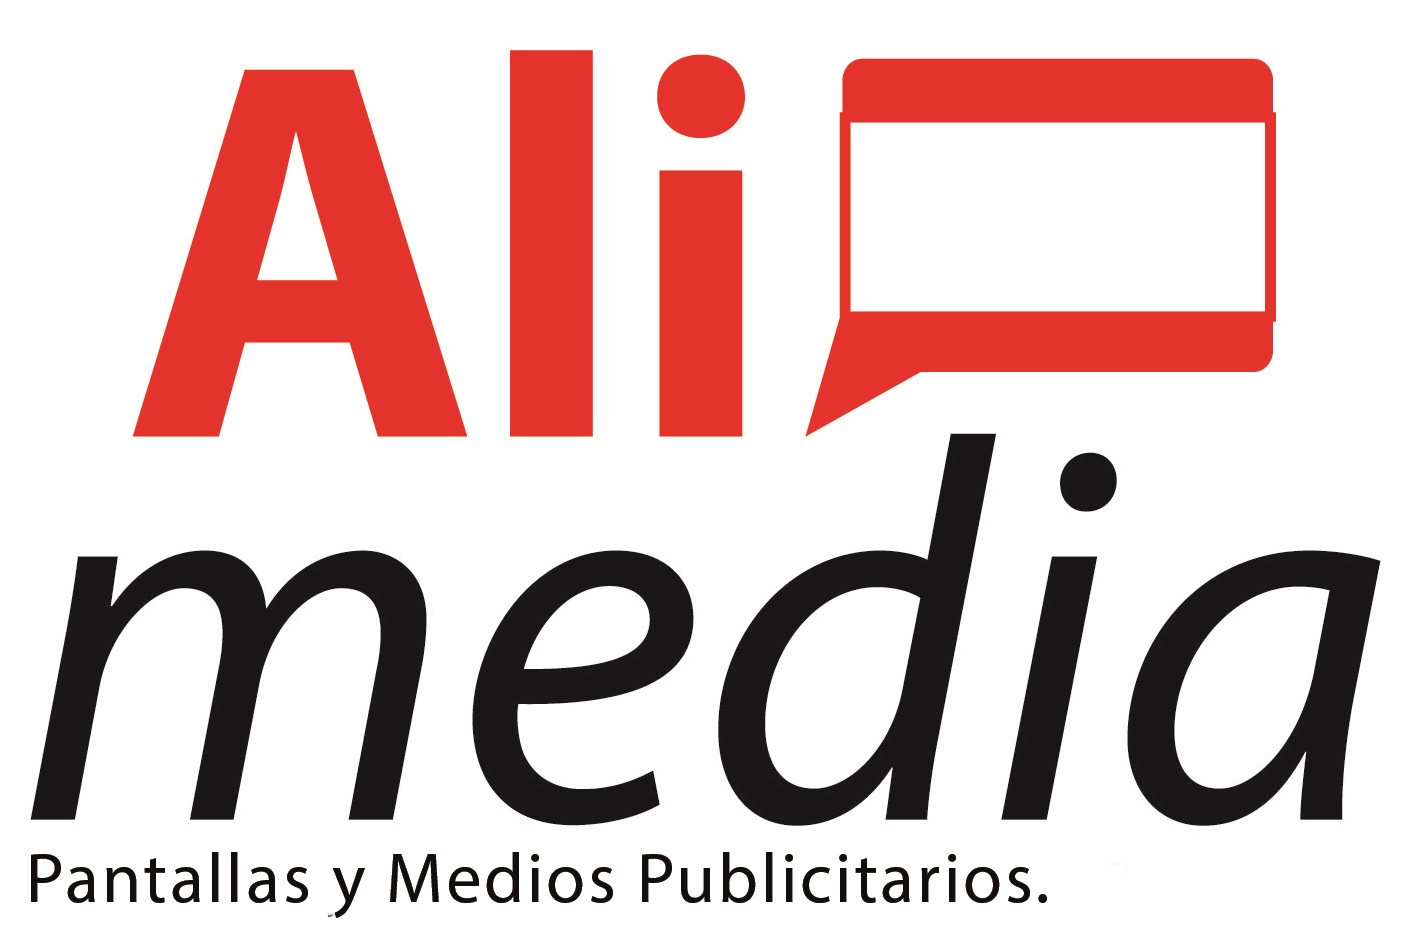 Servicios Publicitarios - ALIMEDIA SA de CV - Cancún